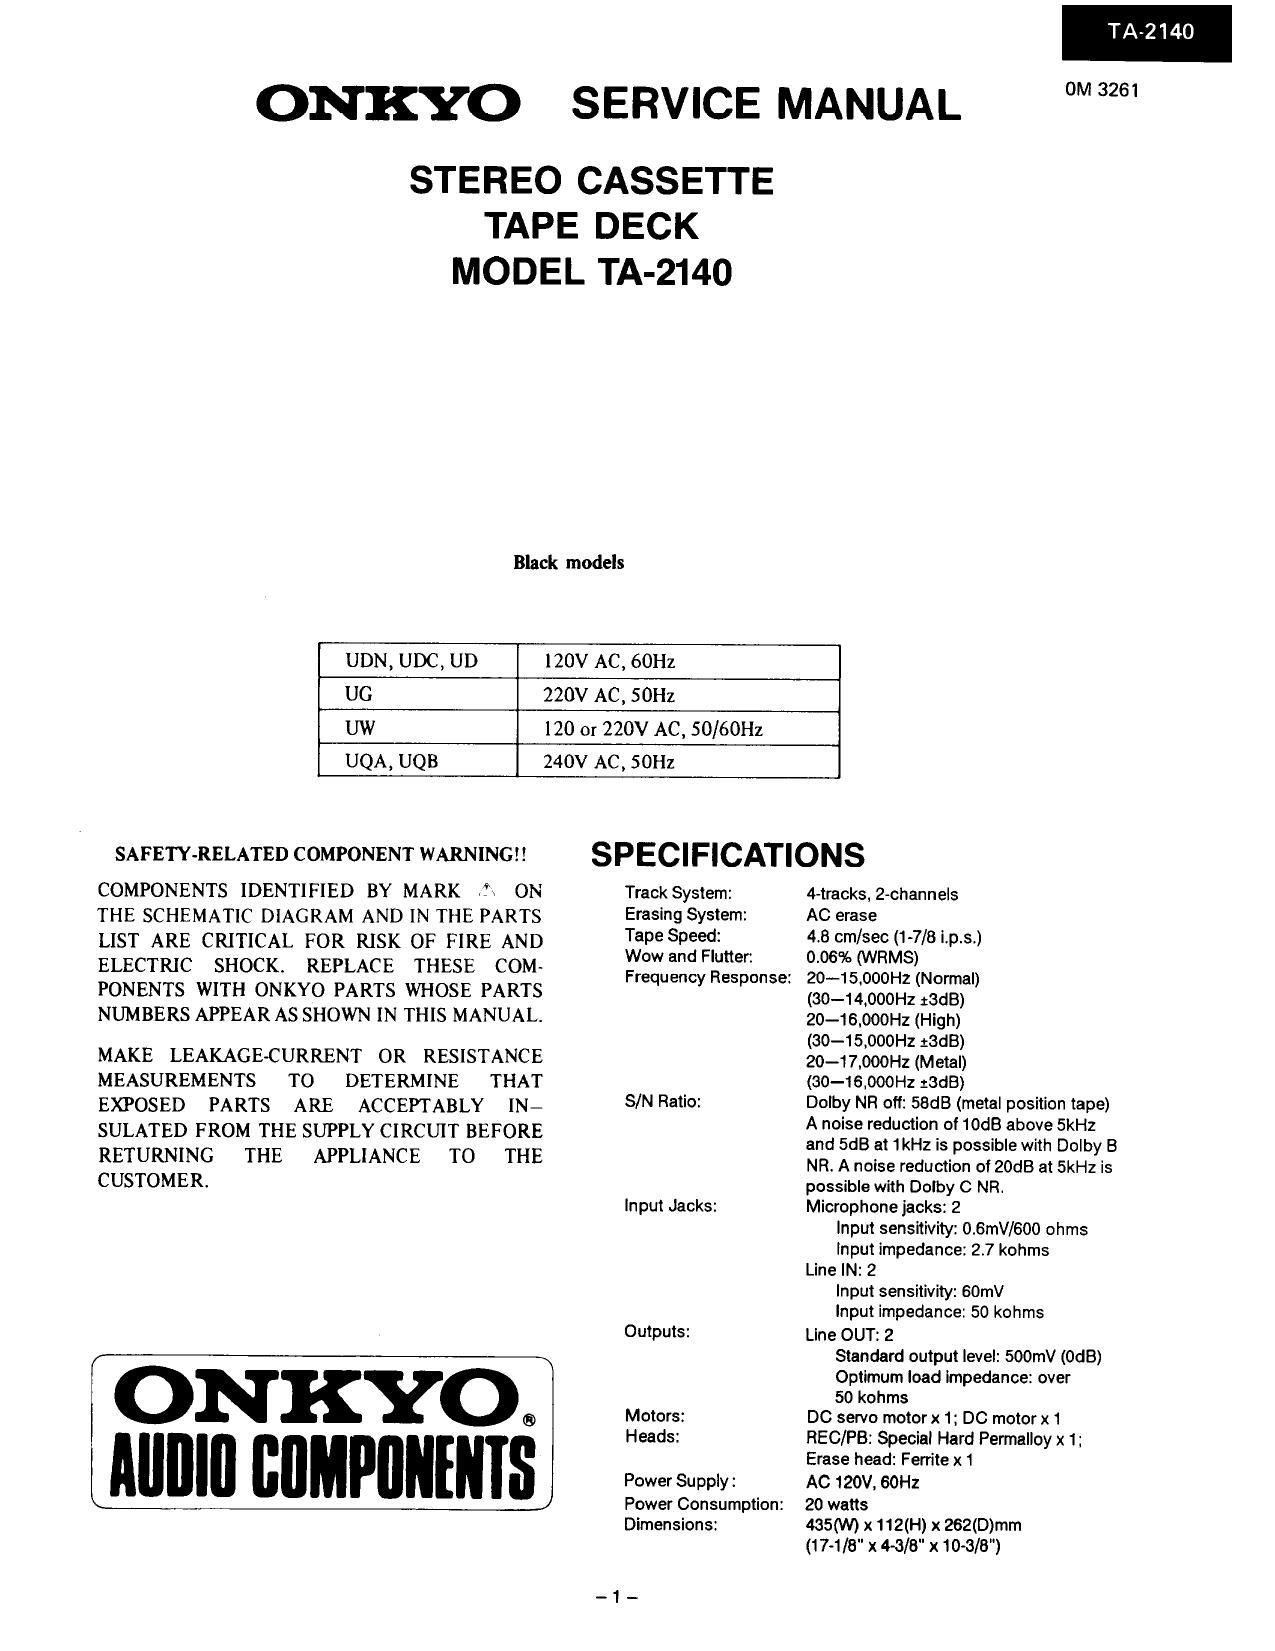 Onkyo TA 2140 Service Manual